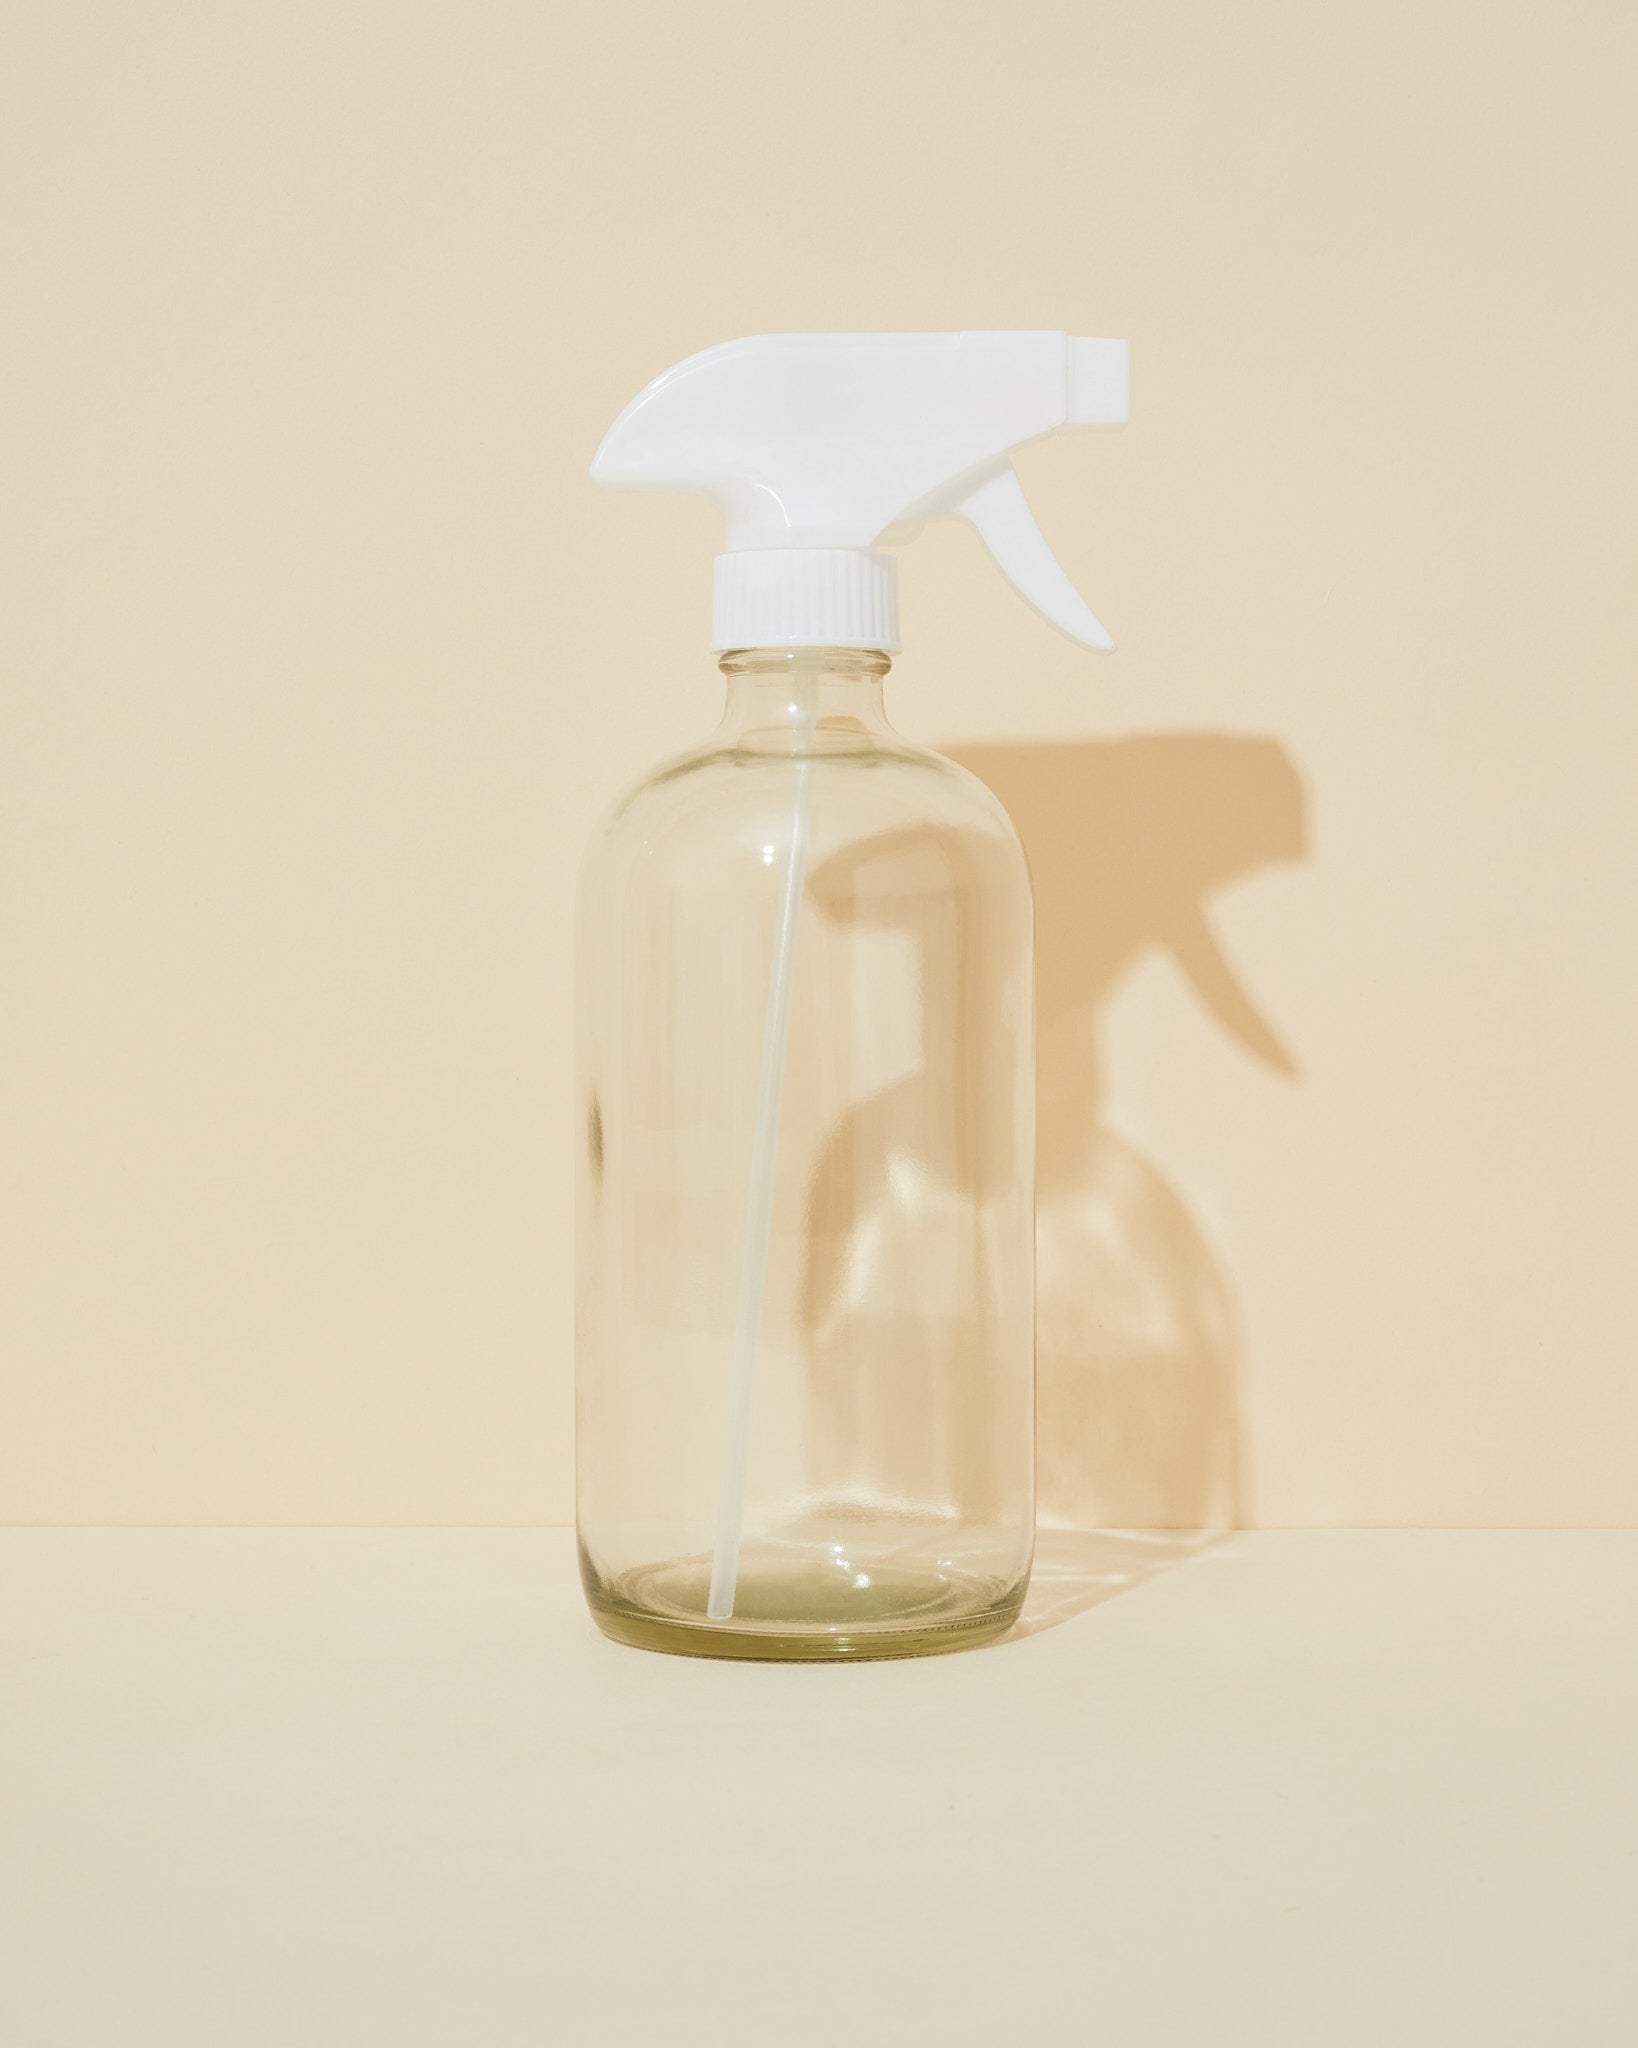 translucent naked 16oz glass bottle & white trigger sprayer - 284 - Makesy